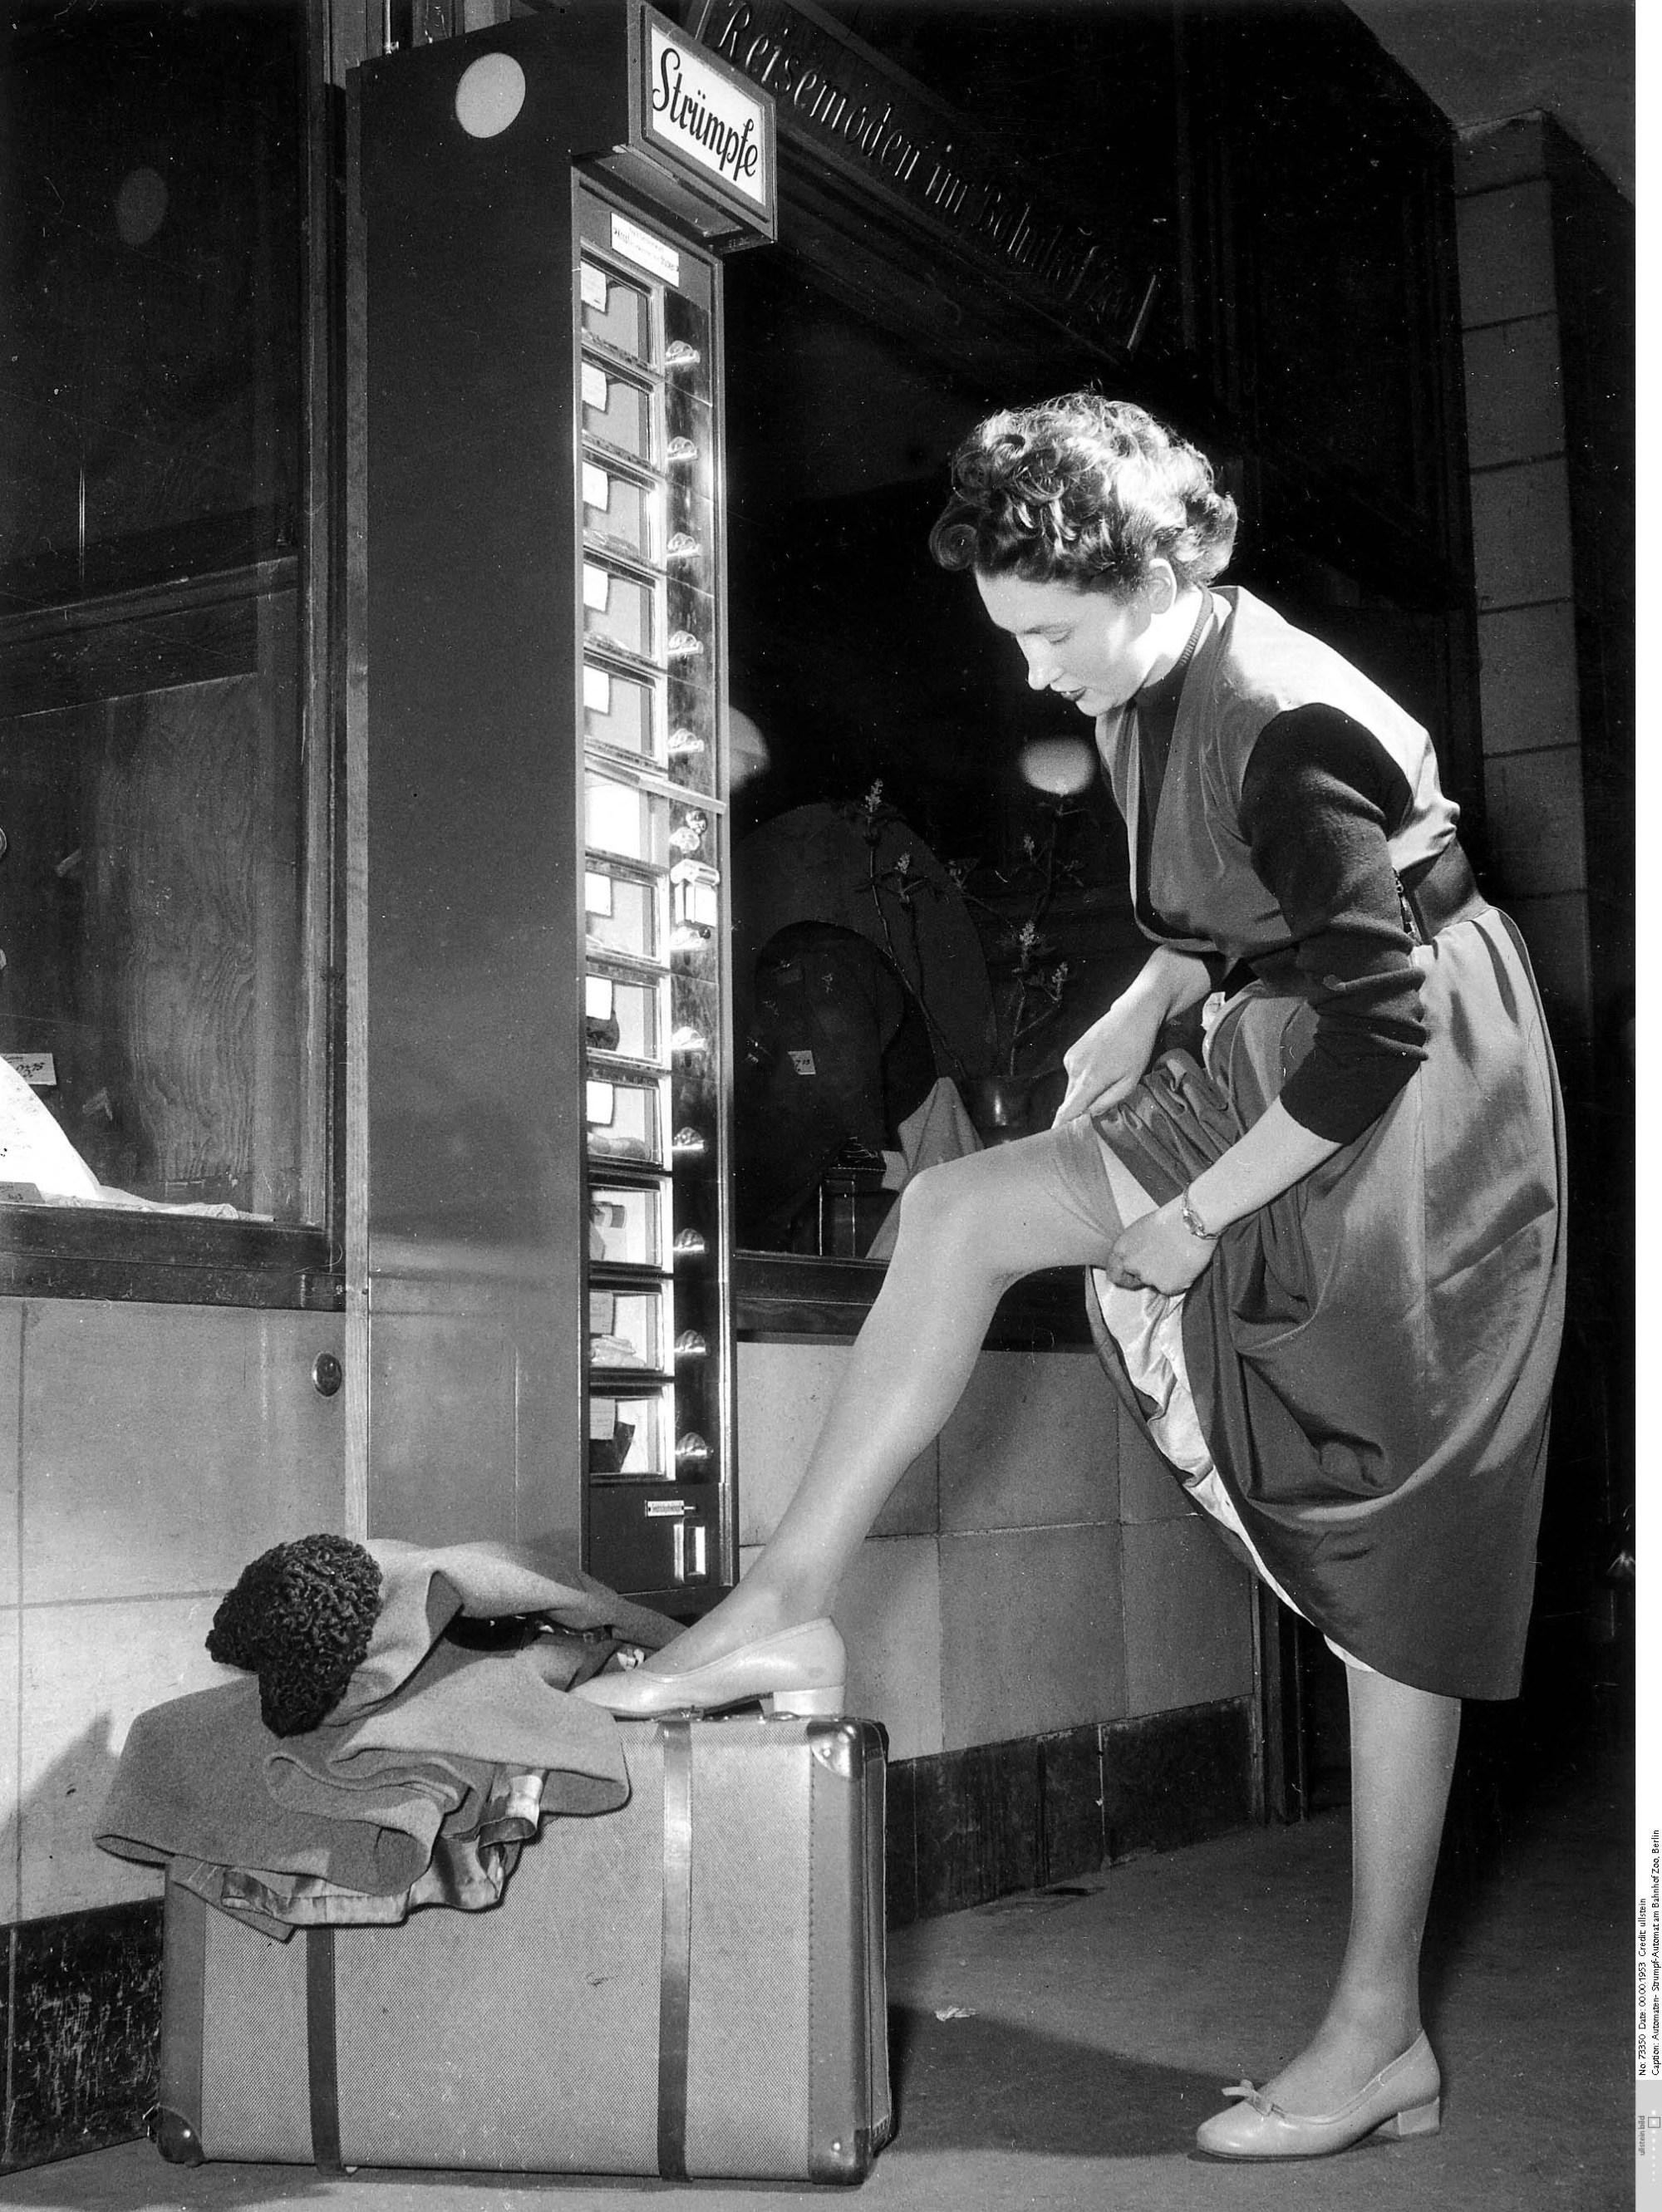 žena si na svou levou nohu podloženou cestovním kufrem navléká punčochu, pravděpodobně zakoupenou v blízkém automatu na punčochové zboží